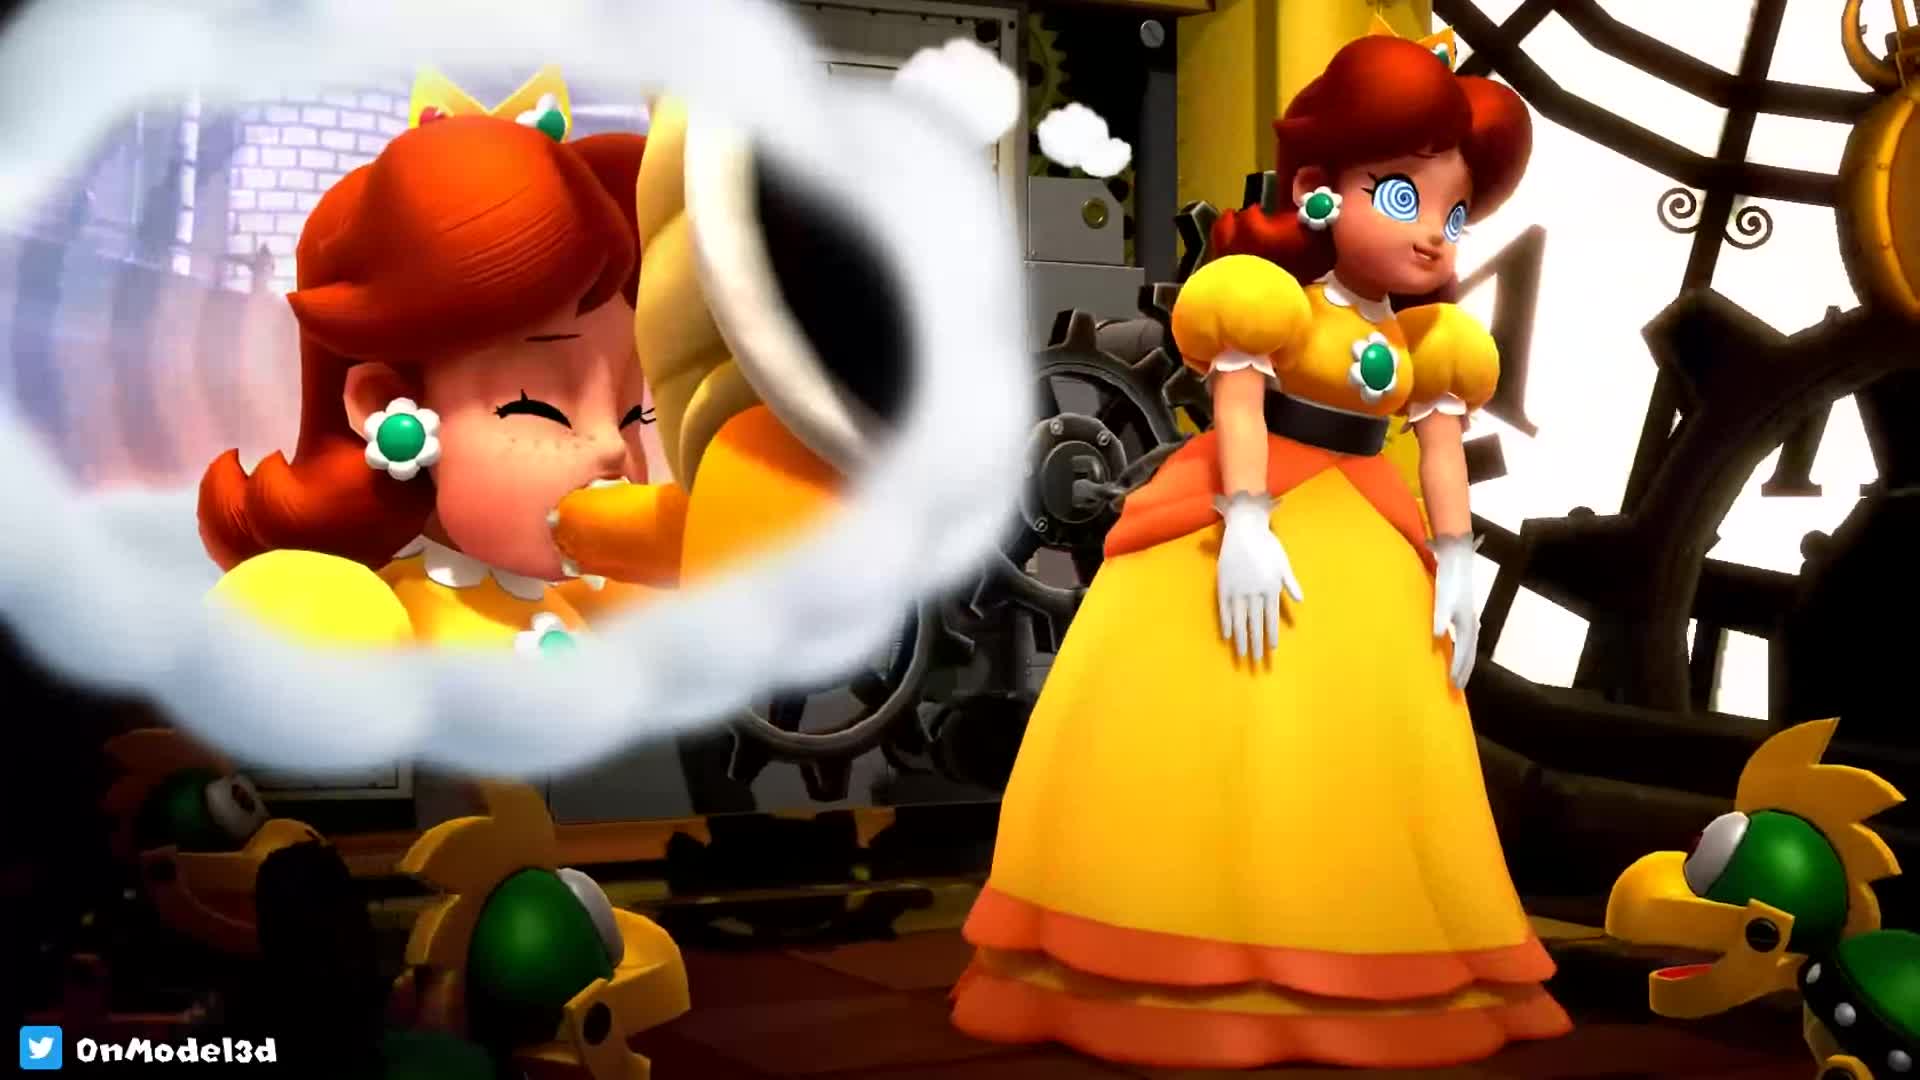 Mario Kart Princess Daisy Blowjob 1080p - Lewd.ninja